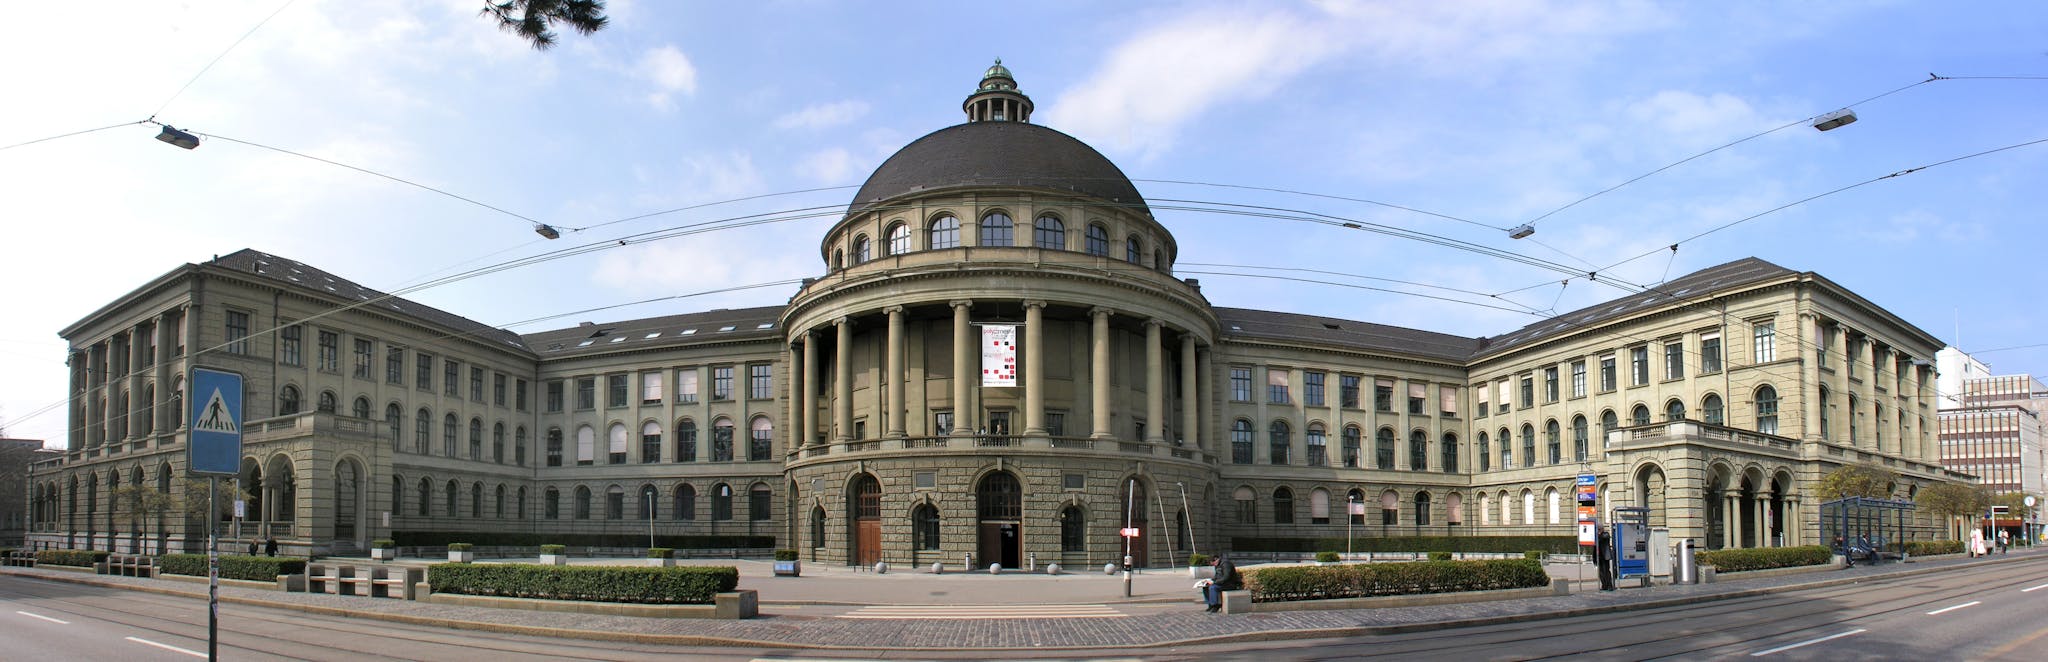 ETH Zurich – Swiss Federal Institute of Technology Zurich